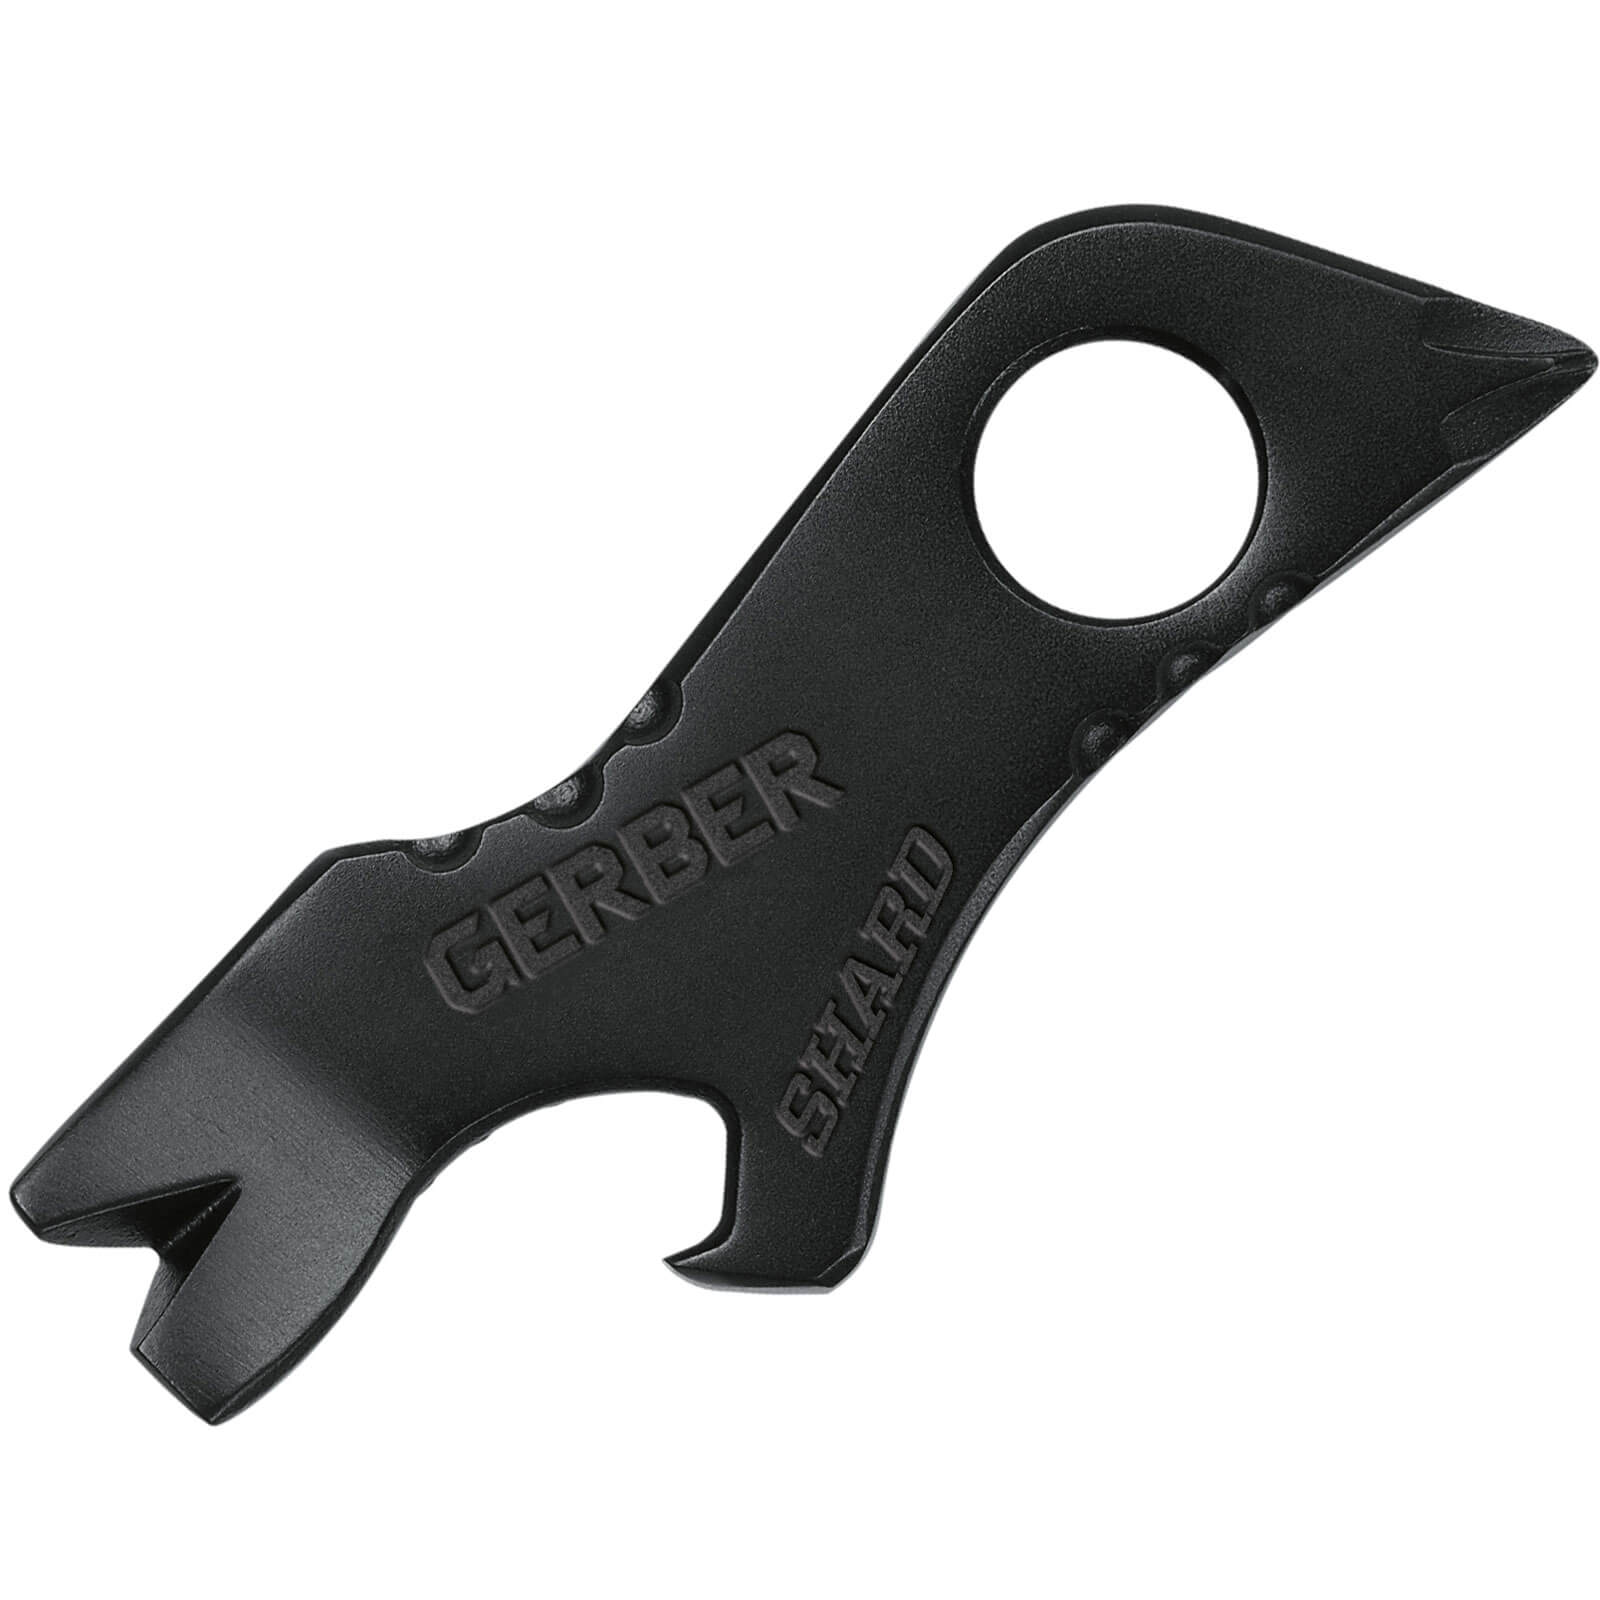 Image of Gerber SHARD Keychain Multi Tool Black